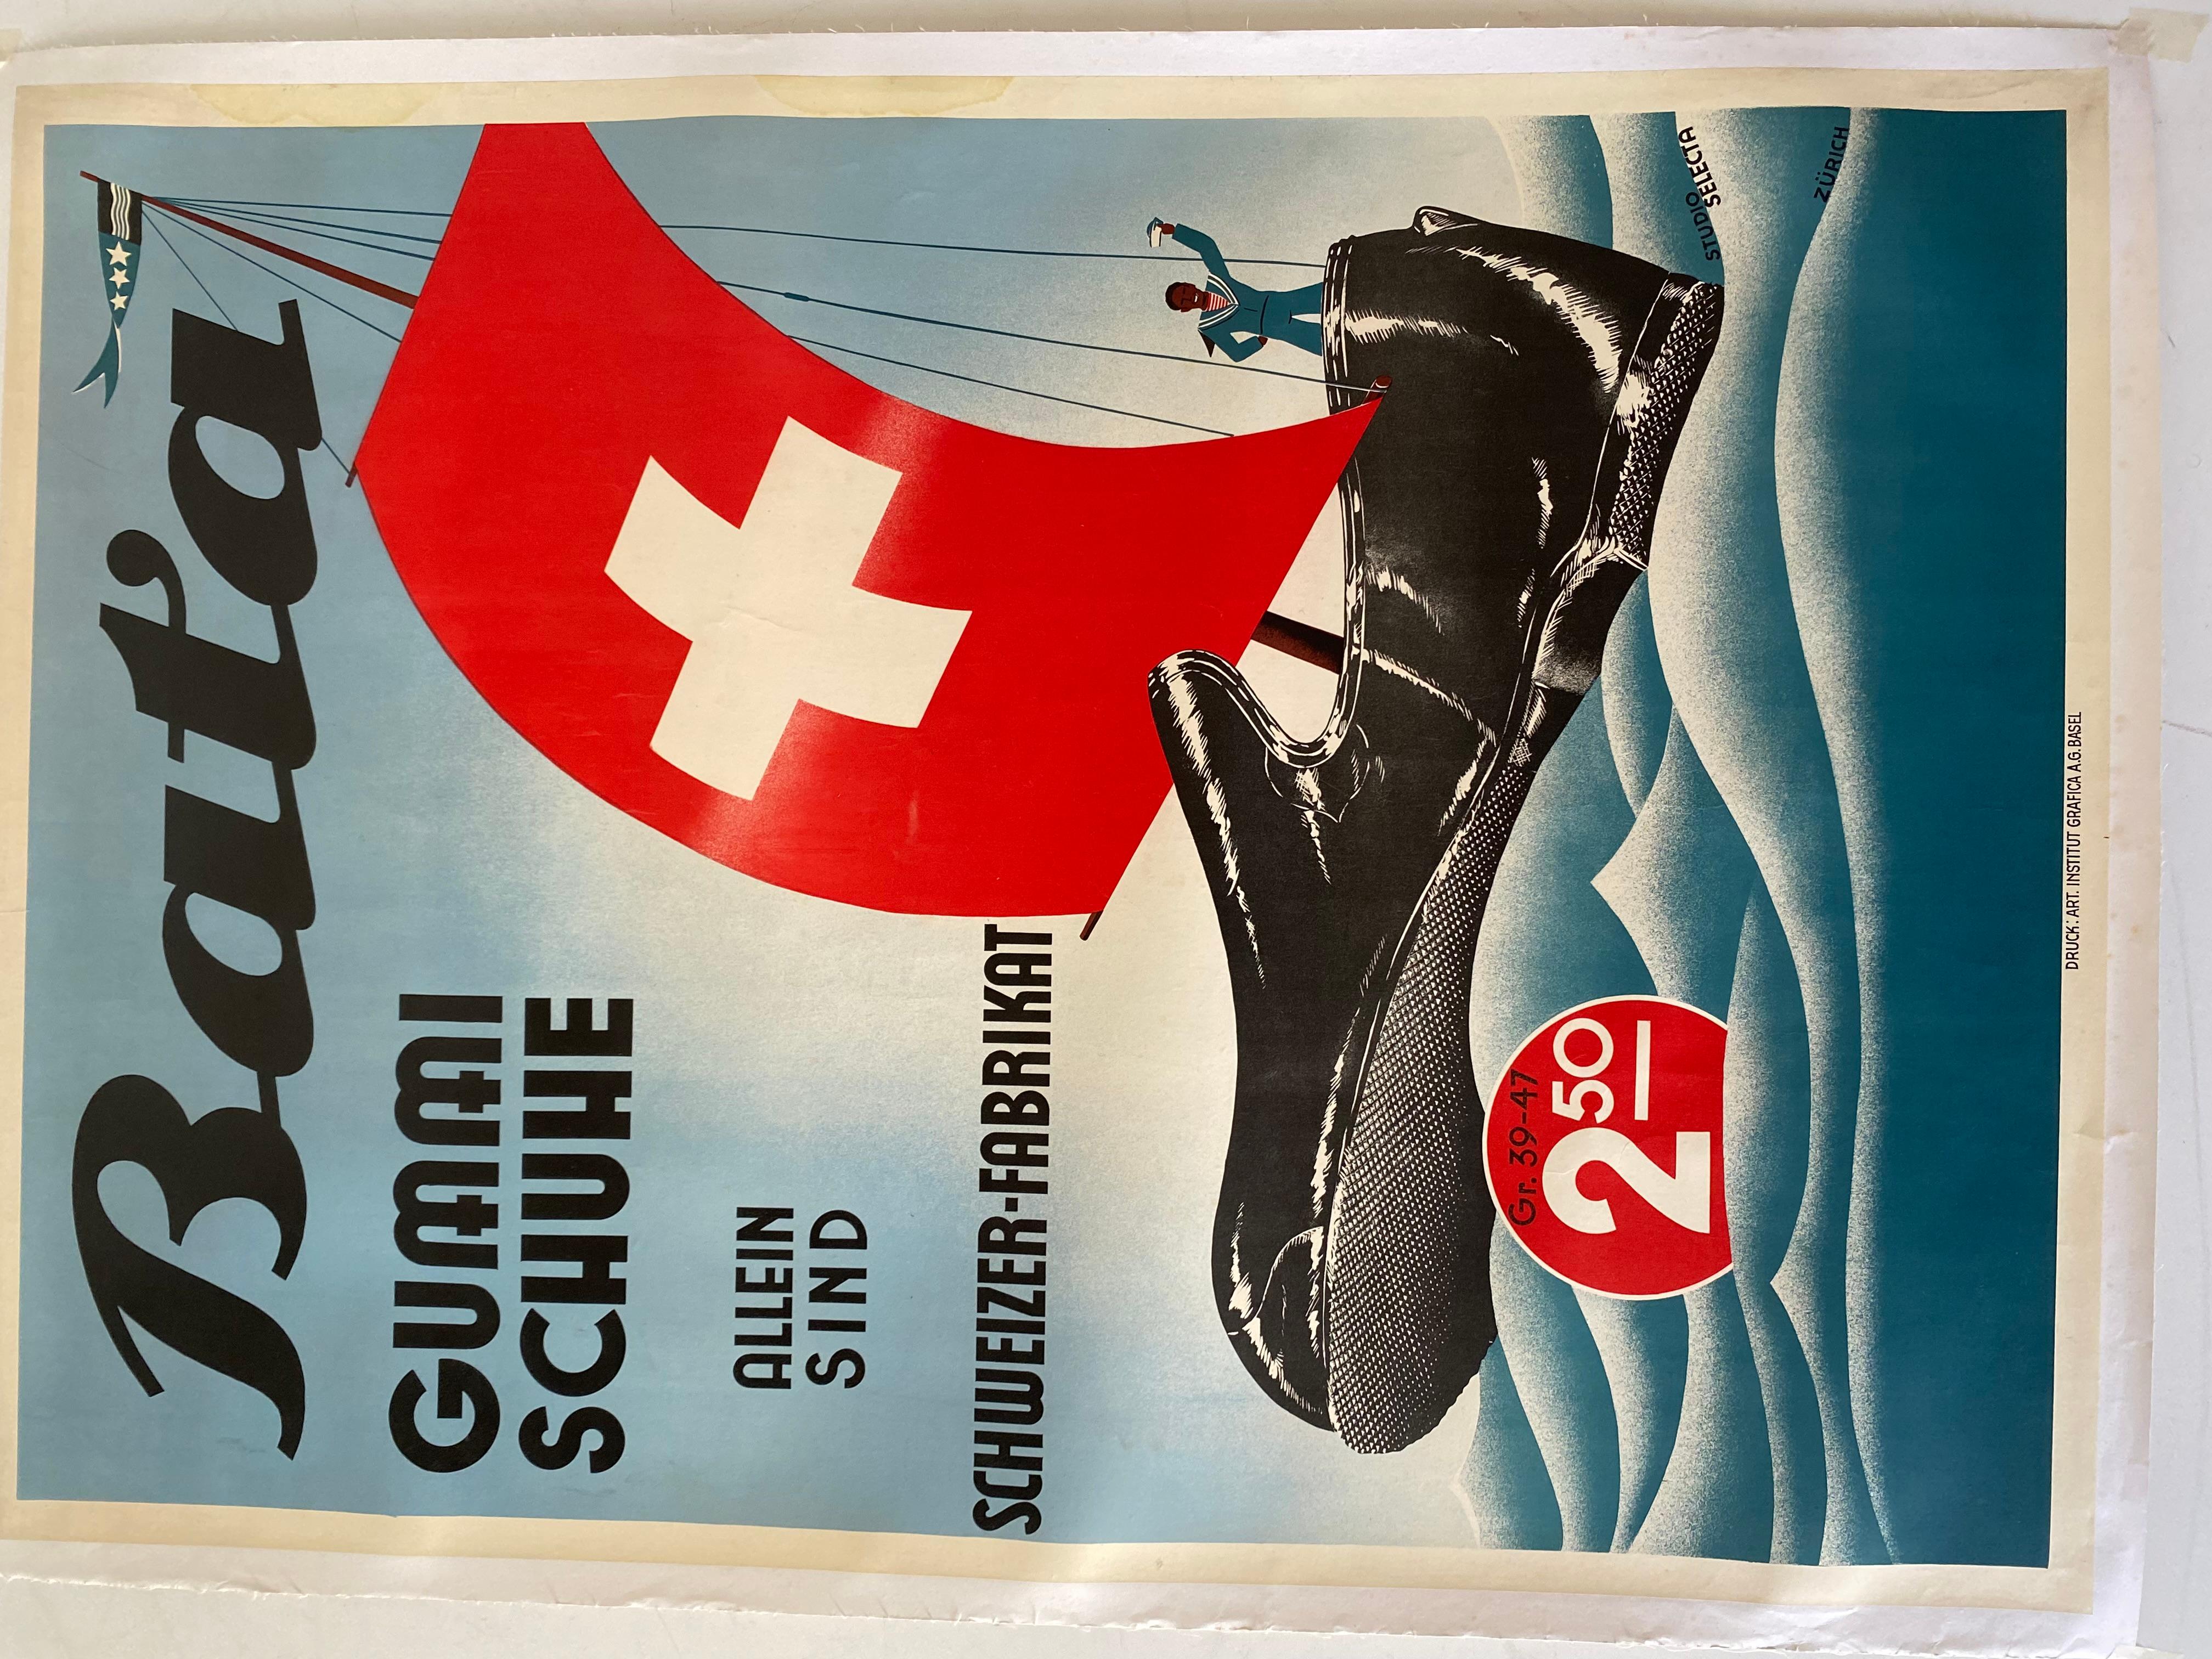 Affiche originale de la BATA datant de la fin des années 1950. Papier toilé et couleurs vives. Affiche publicitaire de l'organisation de chaussures BATA, connue dans le monde entier.

Très bon état avec quelques signes du temps.